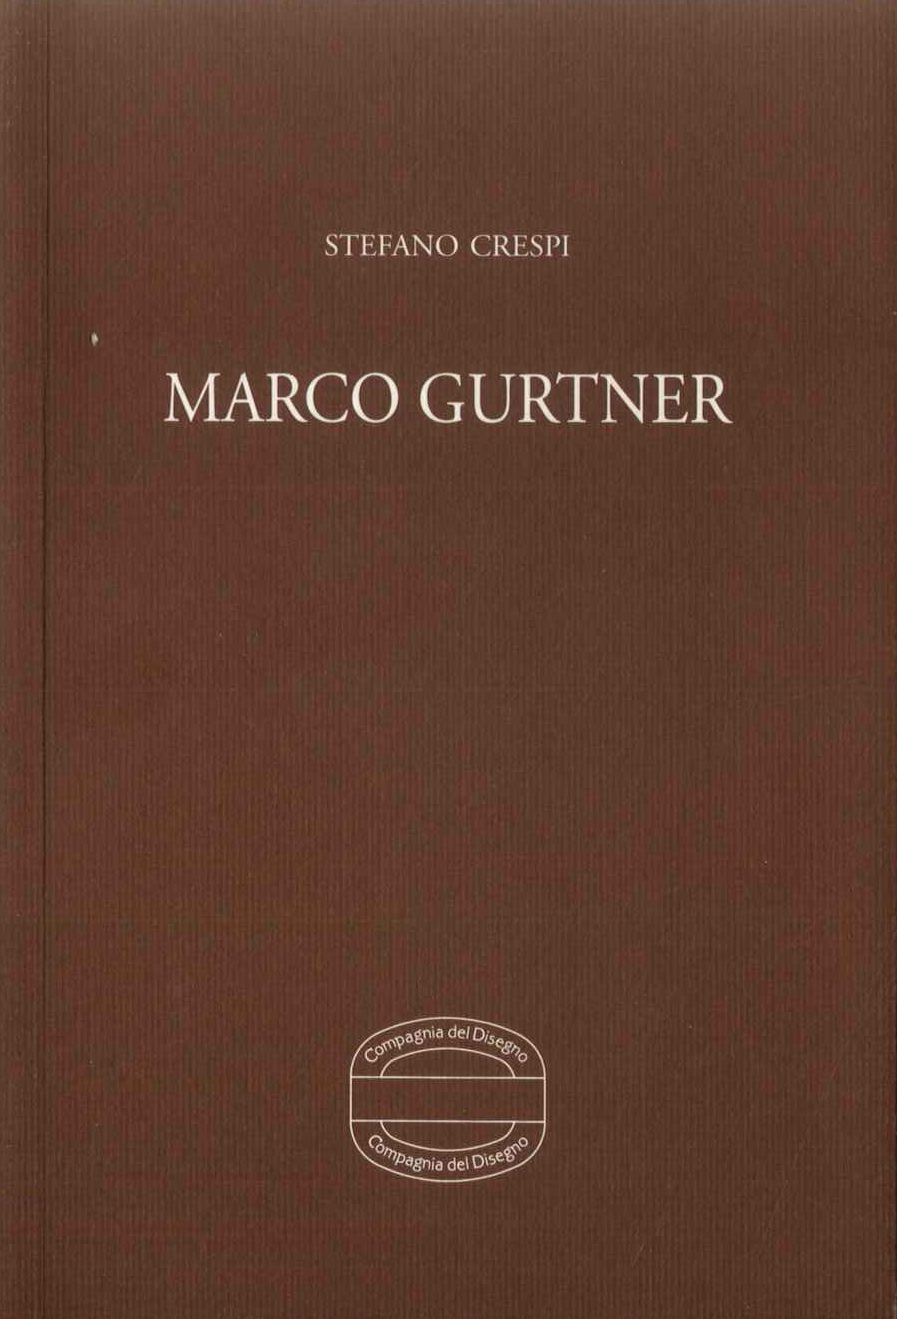 Marco Gurtner. Il volto impossibile 1991-2001